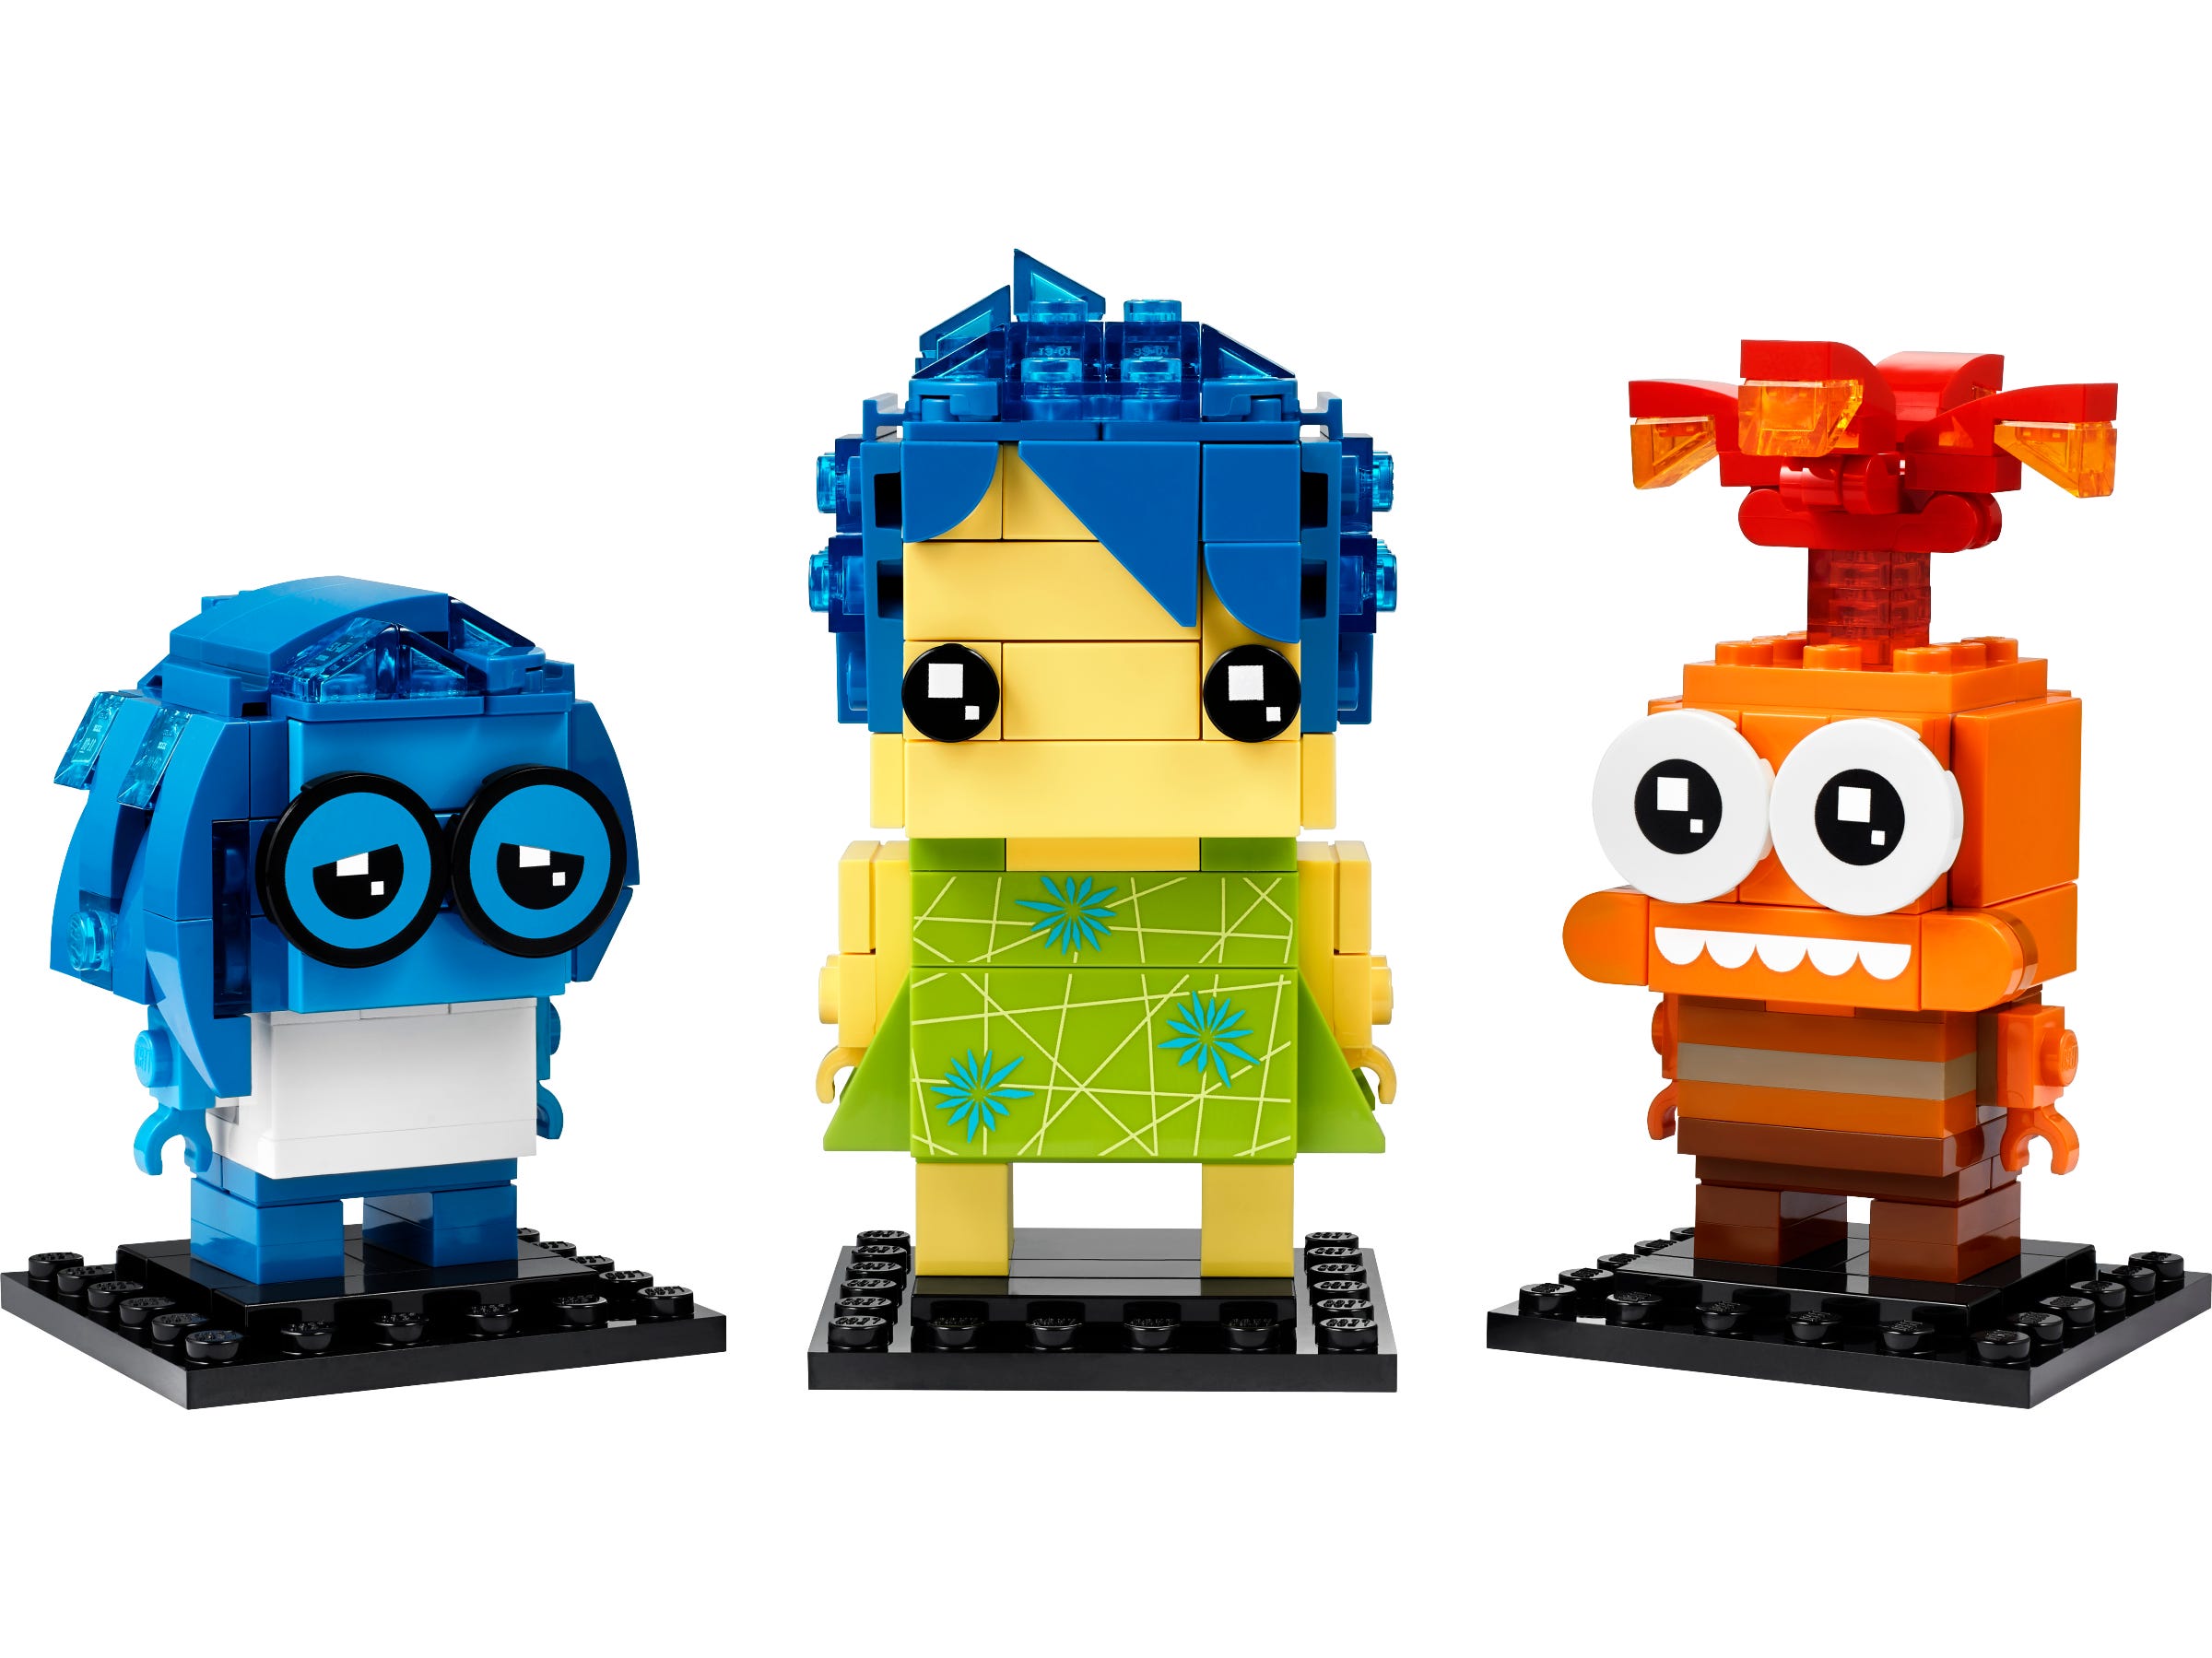 LEGO Plezier, Verdriet en Onzekerheid